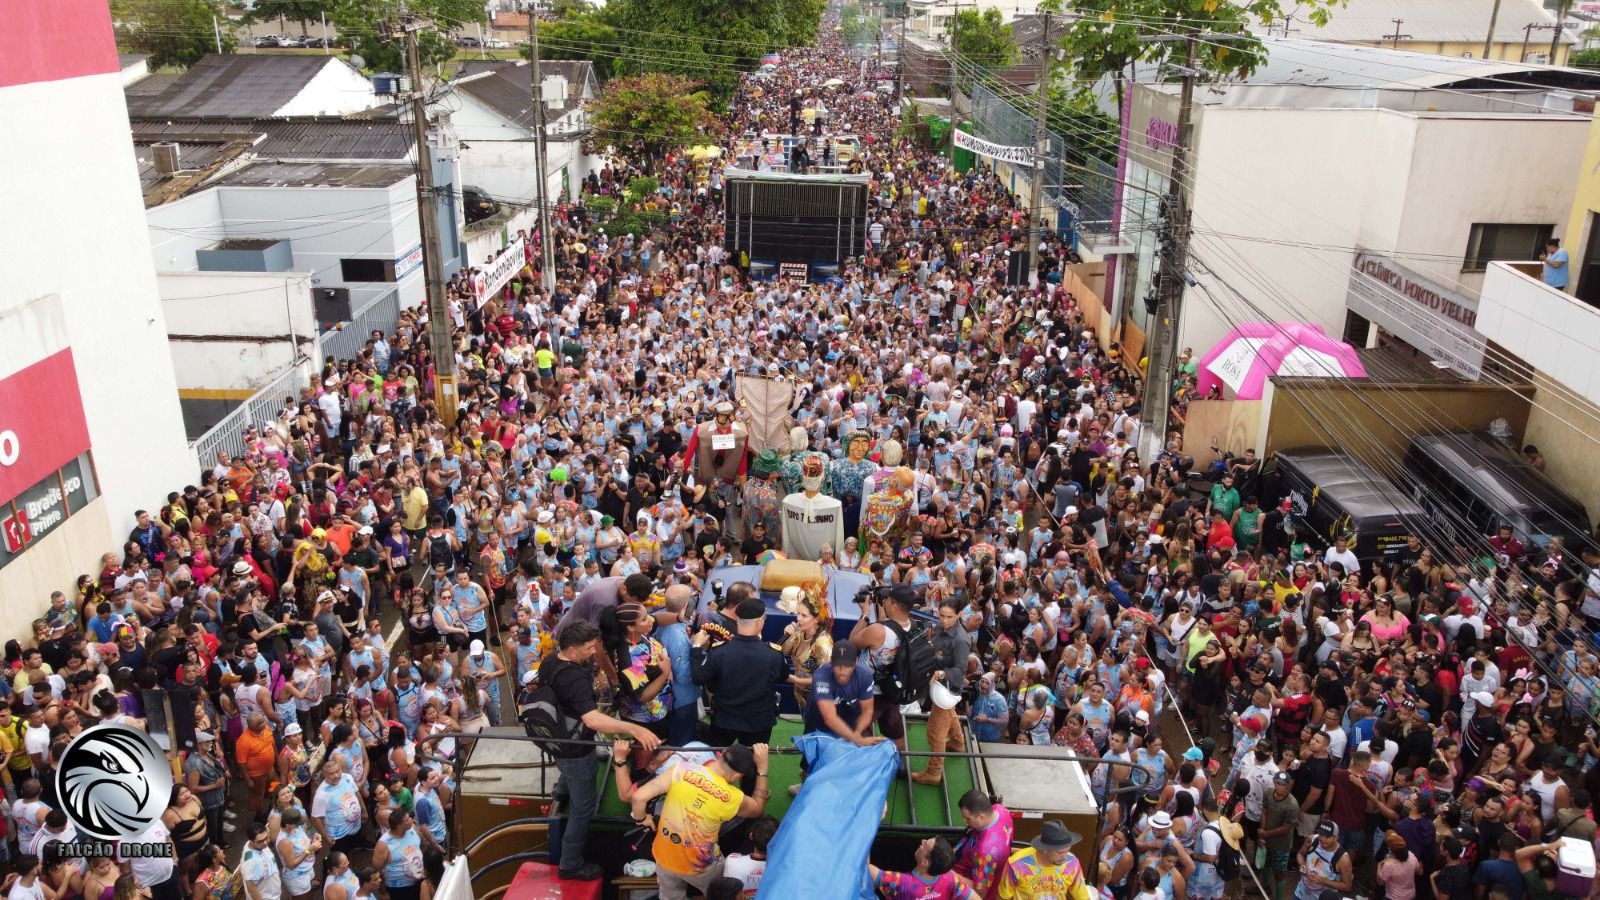 INÍCIO DA FOLIA: Desfiles de blocos de Carnaval começam nesta sexta (02) em Porto Velho